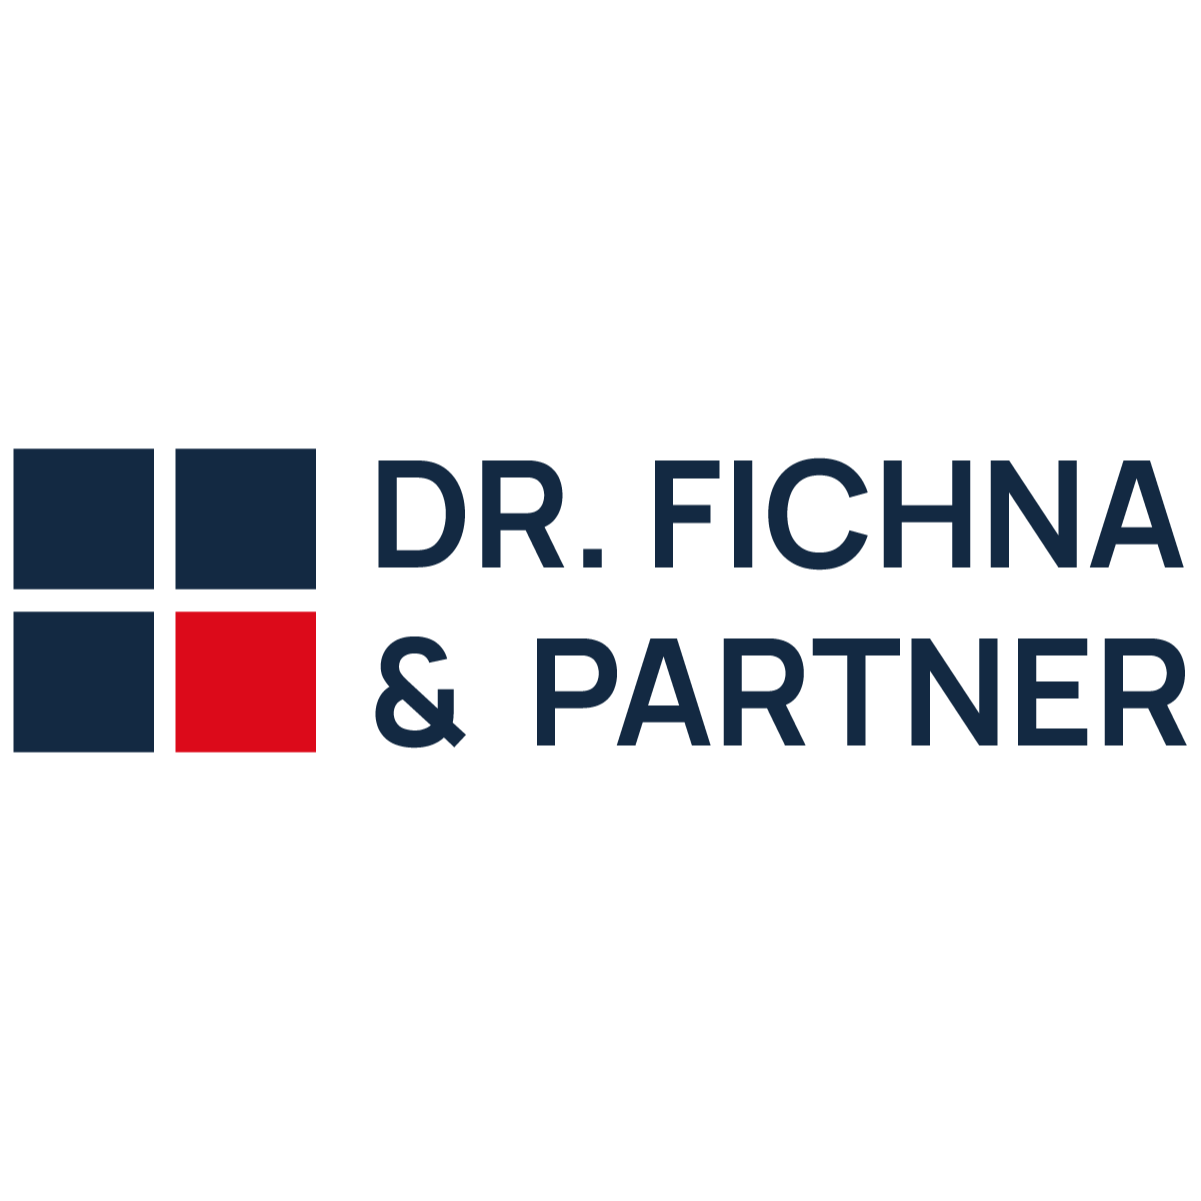 Dr. Fichna & Partner | Zahnärzte und Fachzahnärzte für Oralchirurgie | Ansbach | Logo